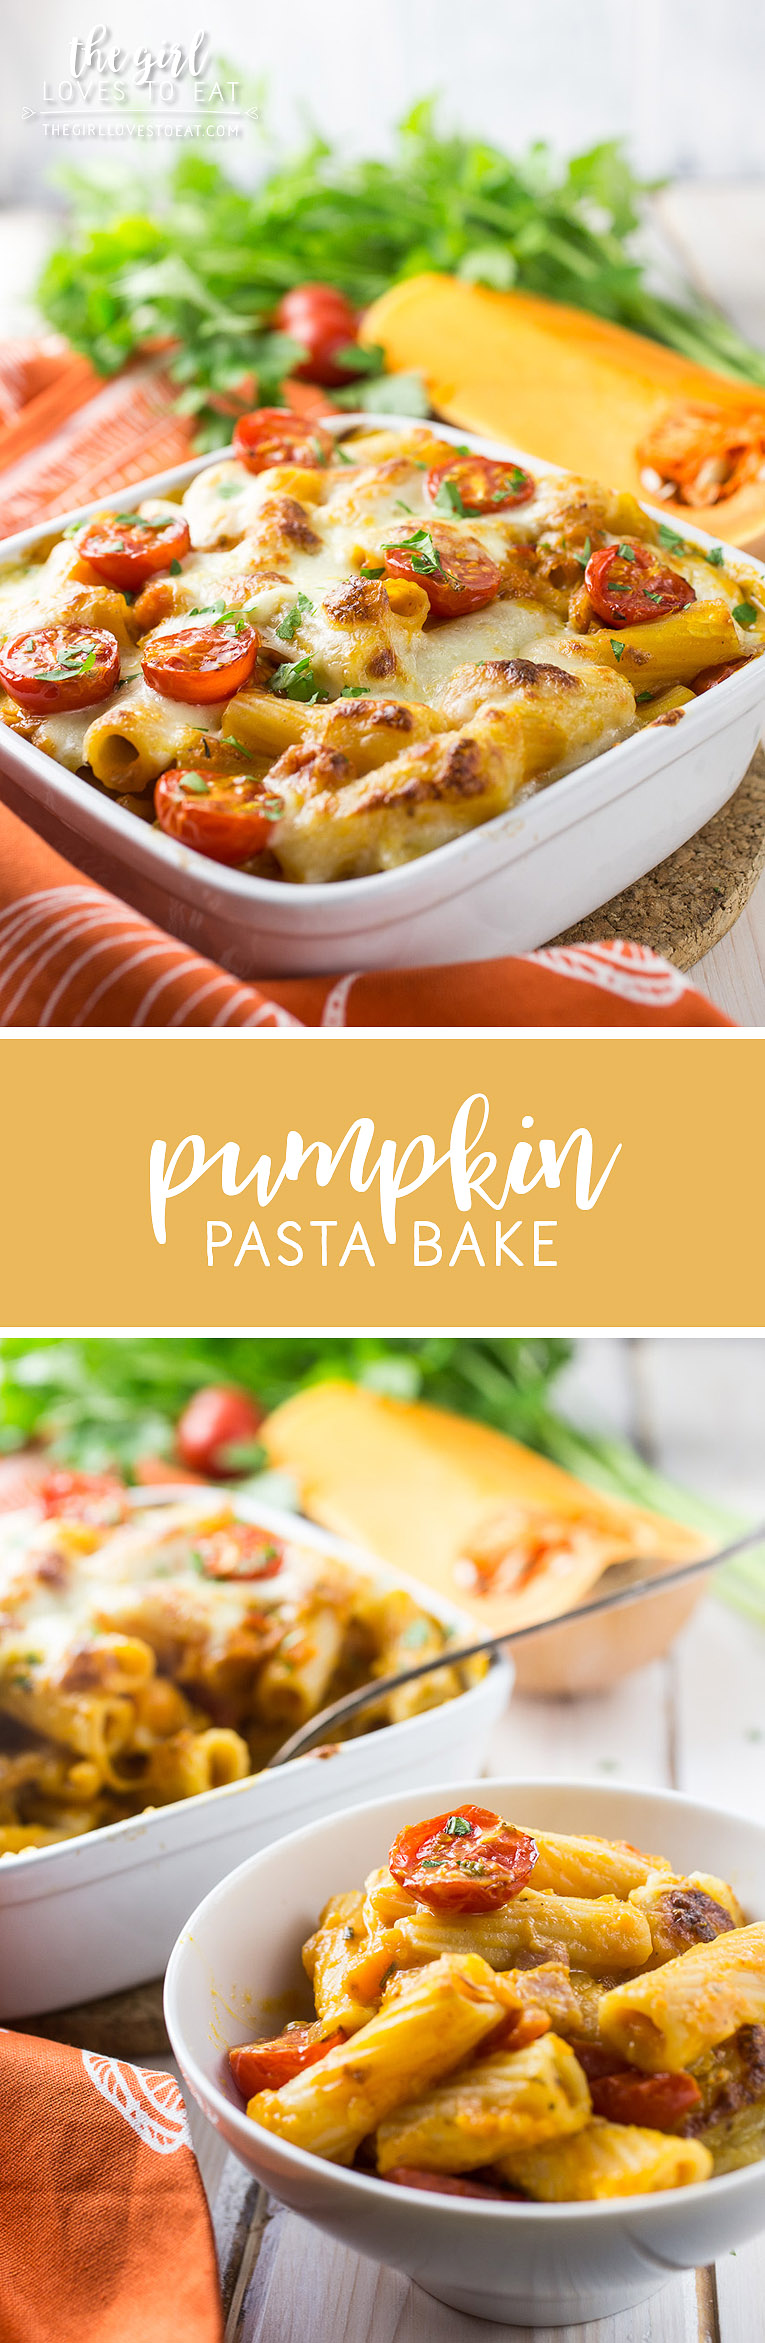 Pumpkin Pasta Bake { thegirllovestoeat.com }